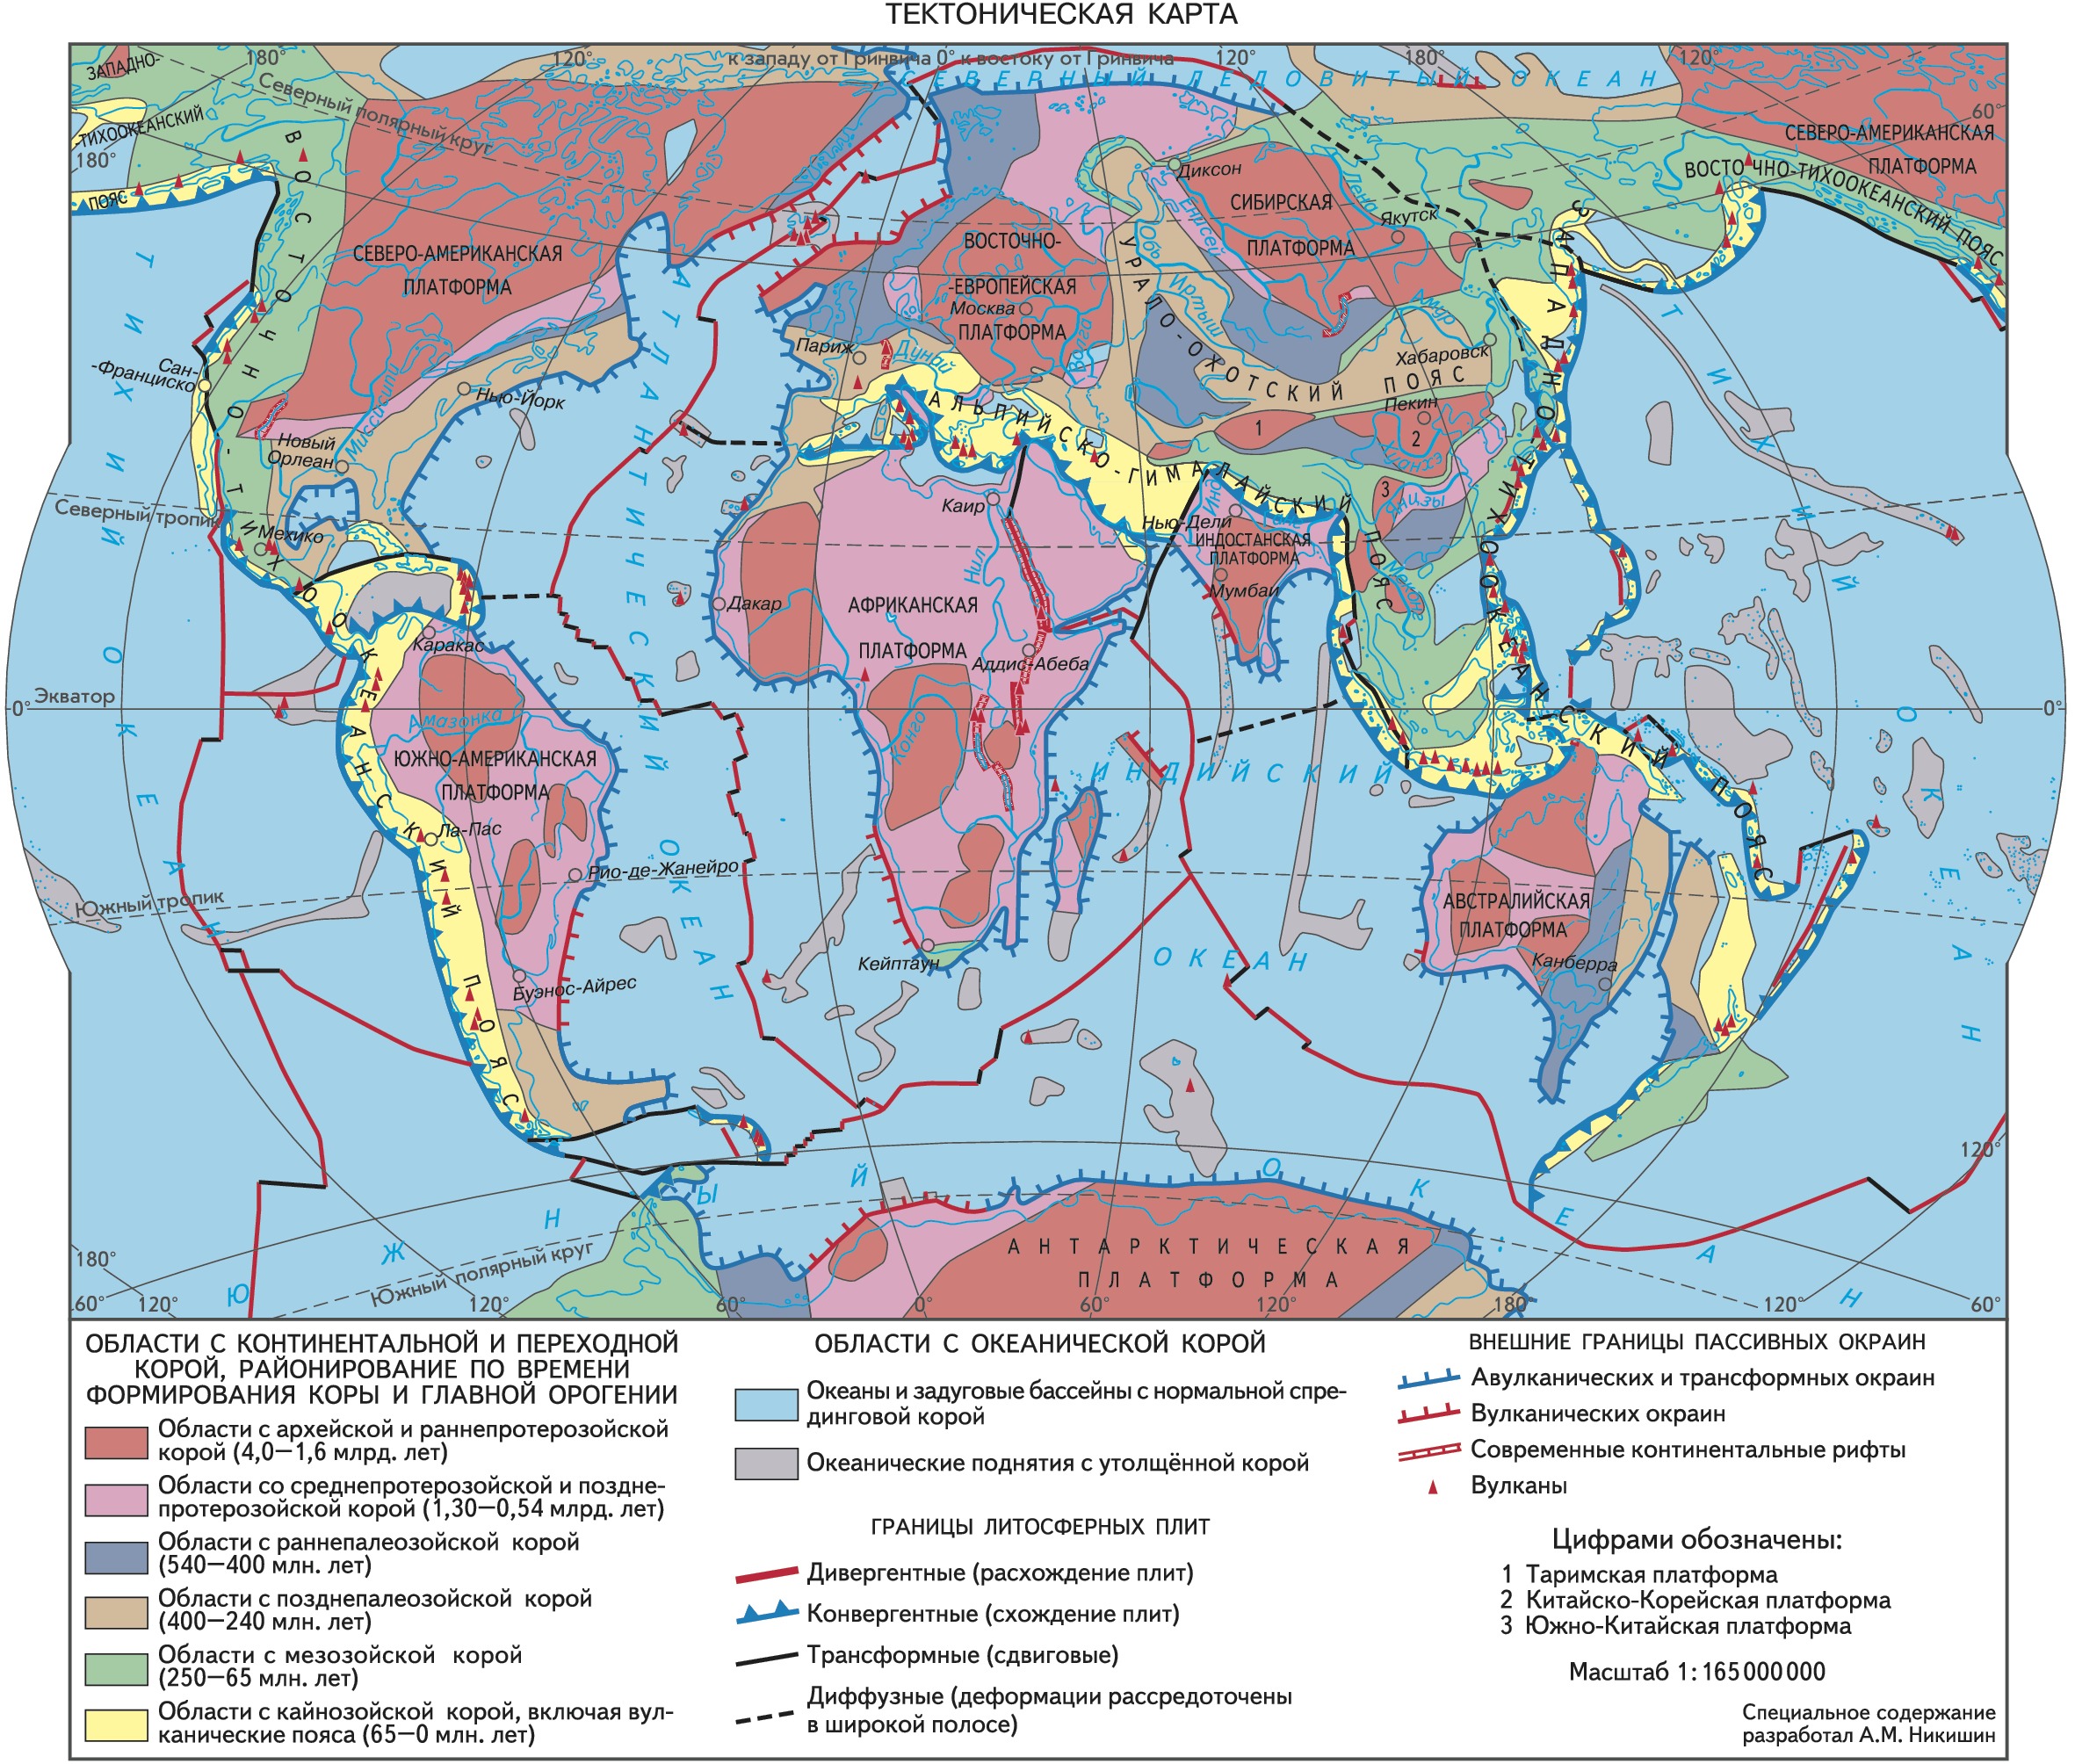 Древнейшие участки земной коры. Карта тектоническая тектоническая.